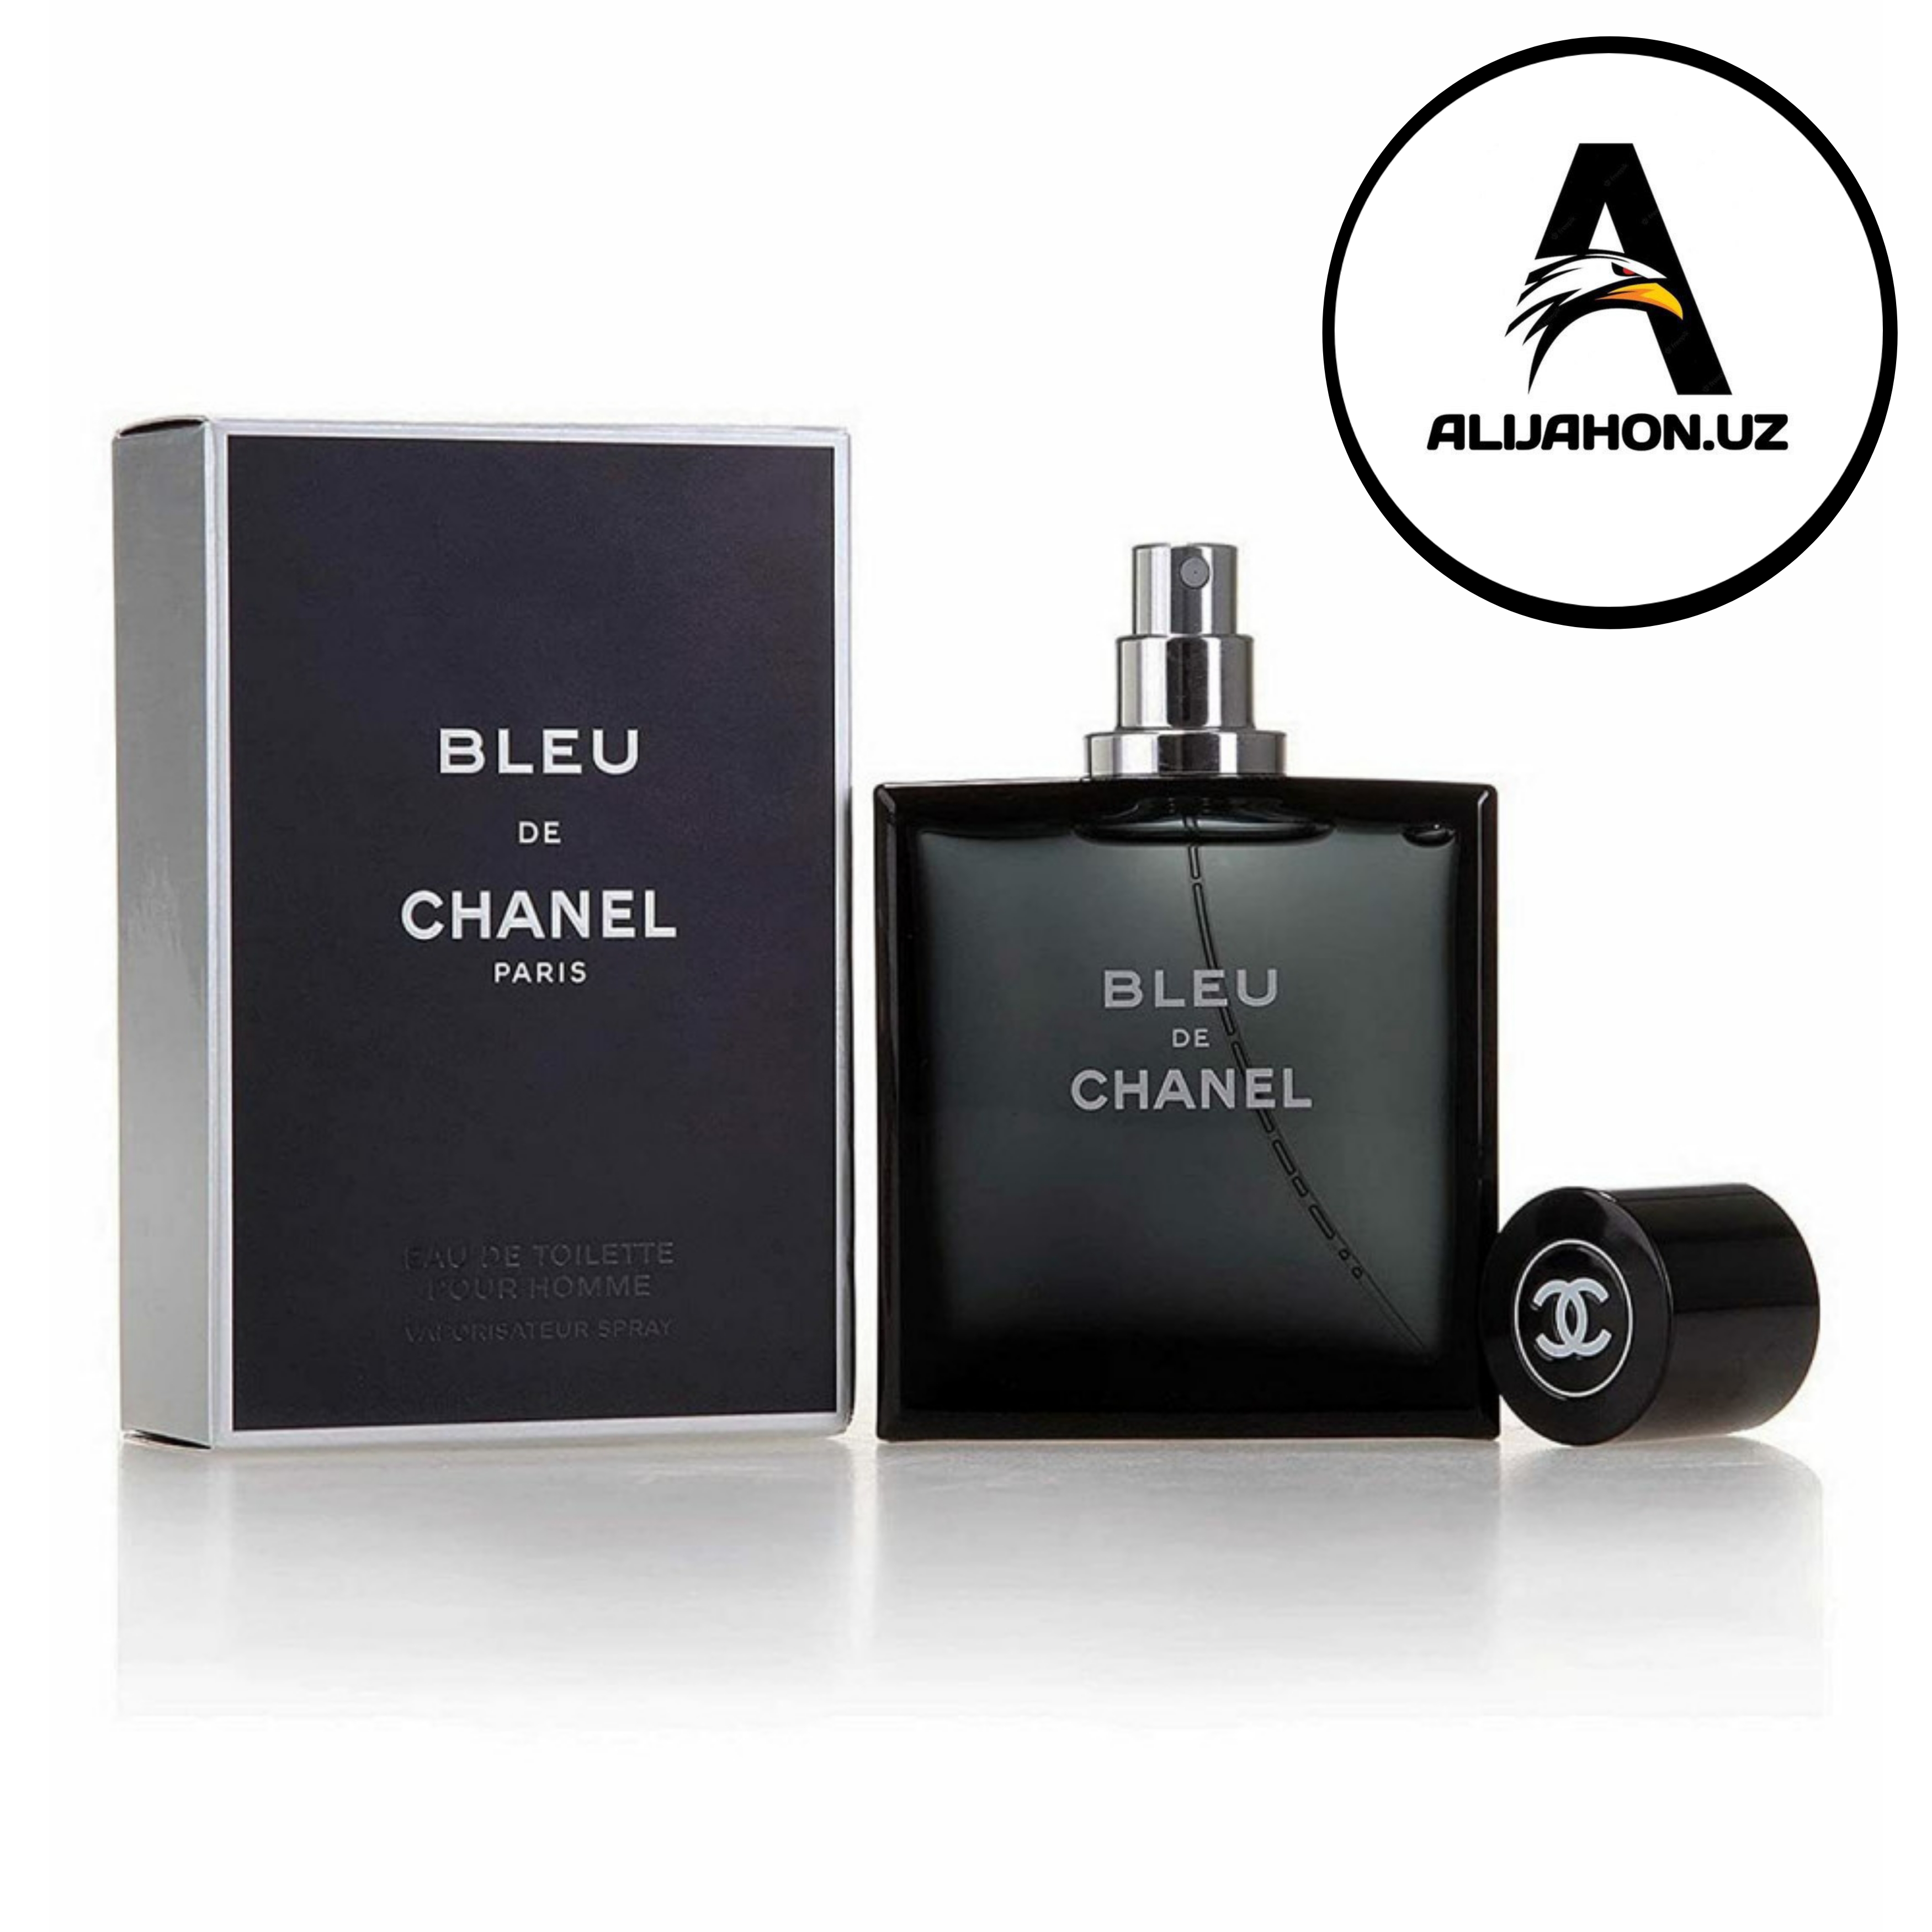 Chanel eau bleu. Chanel bleu de Chanel Parfum 100 ml. Blue de Chanel m (Chanel) 100m. Chanel Blue de Chanel 100ml. Бле де Шанель, 100мл,мужской Парфюм.